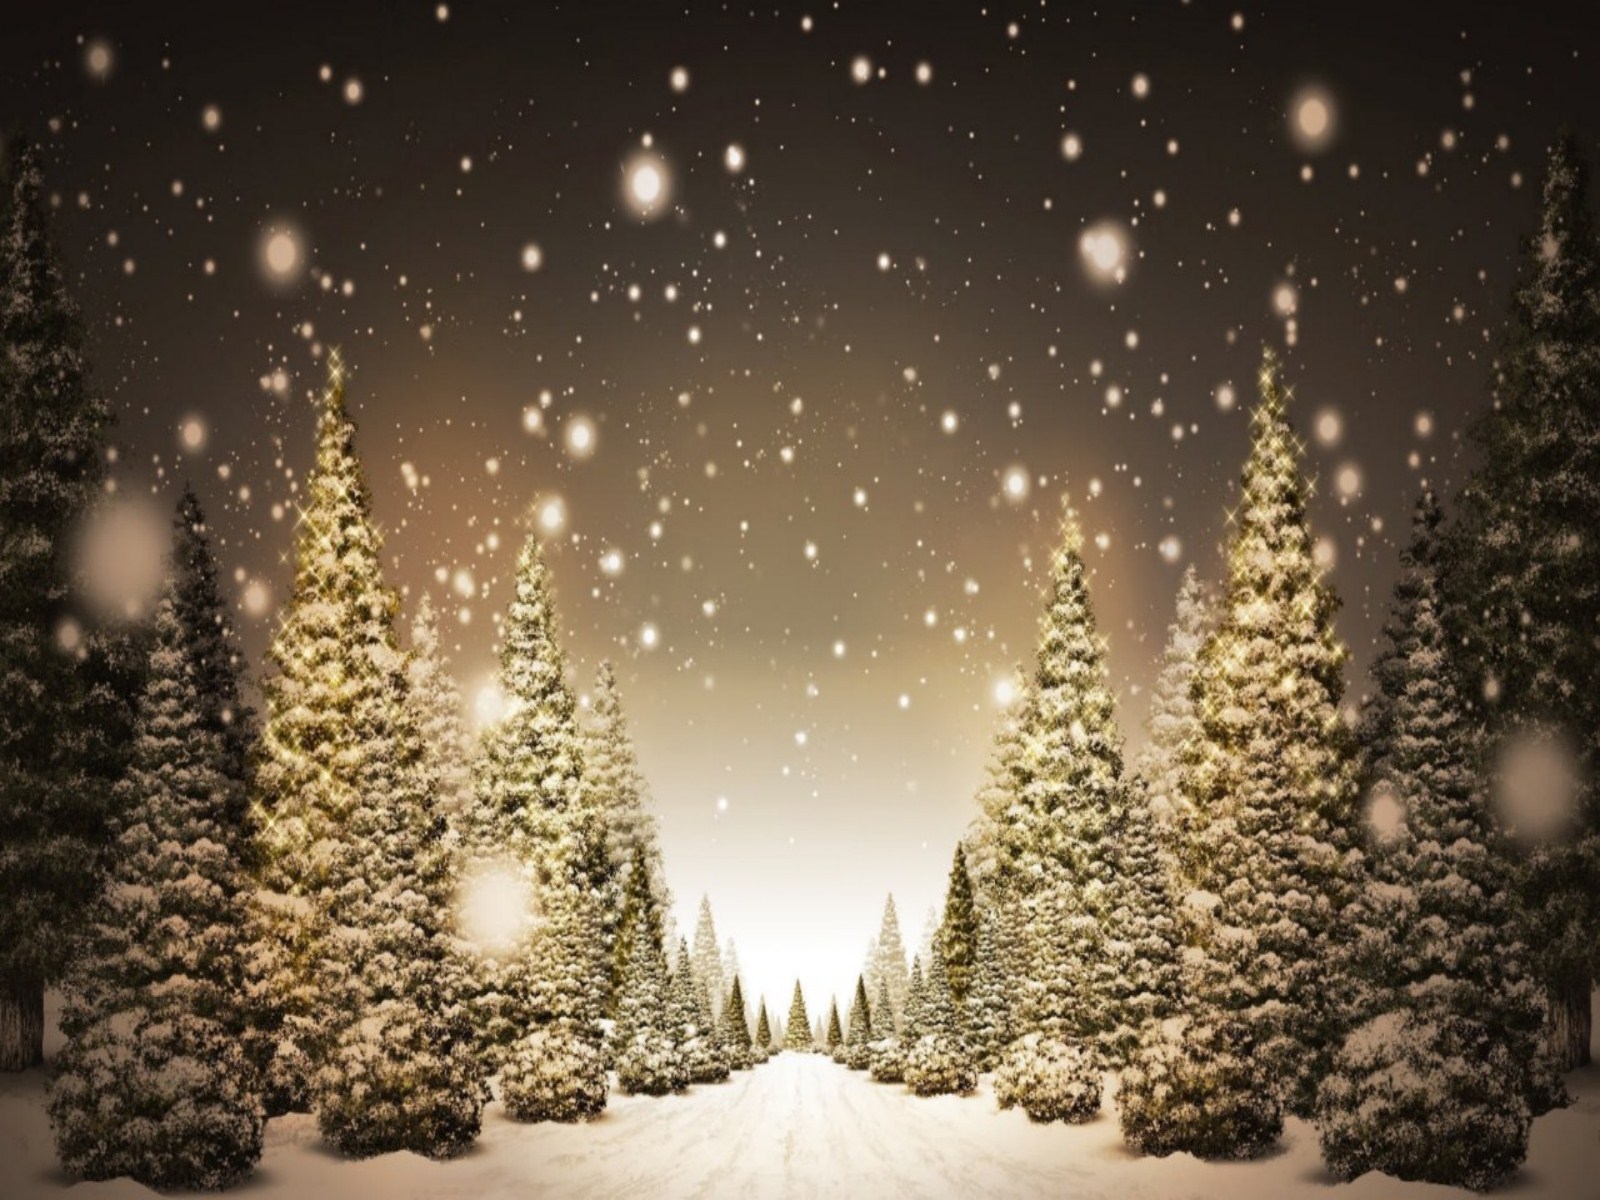 kostenlose weihnachtstapete,weihnachtsbaum,baum,weihnachtsdekoration,weihnachtsbeleuchtung,heiligabend